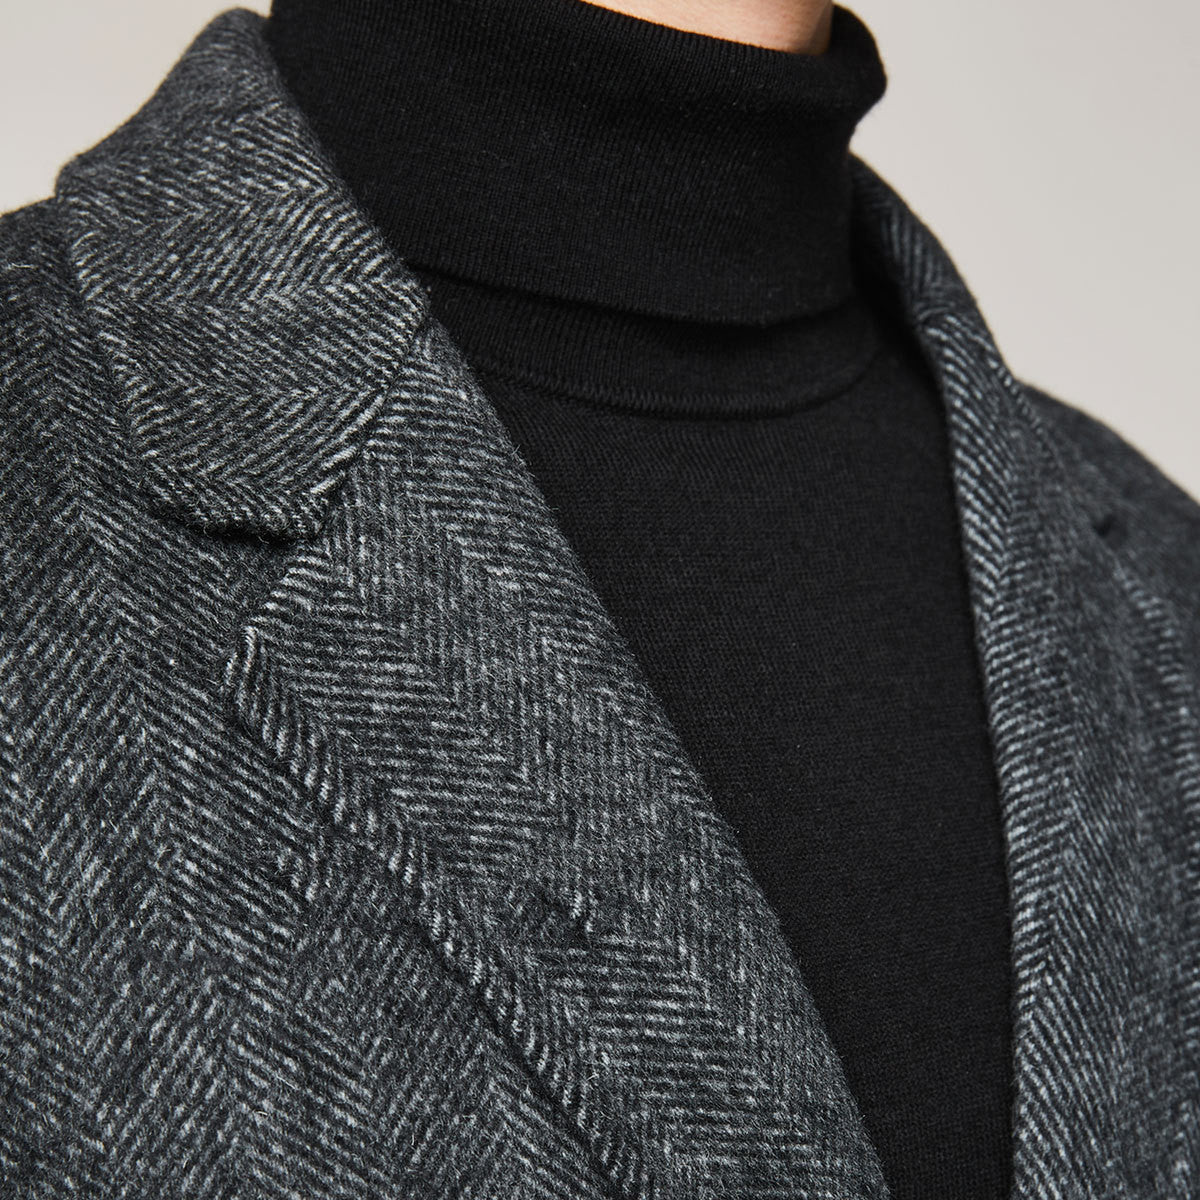 Winter Men's Casual Long Woolen Trench Jacket Overcoat